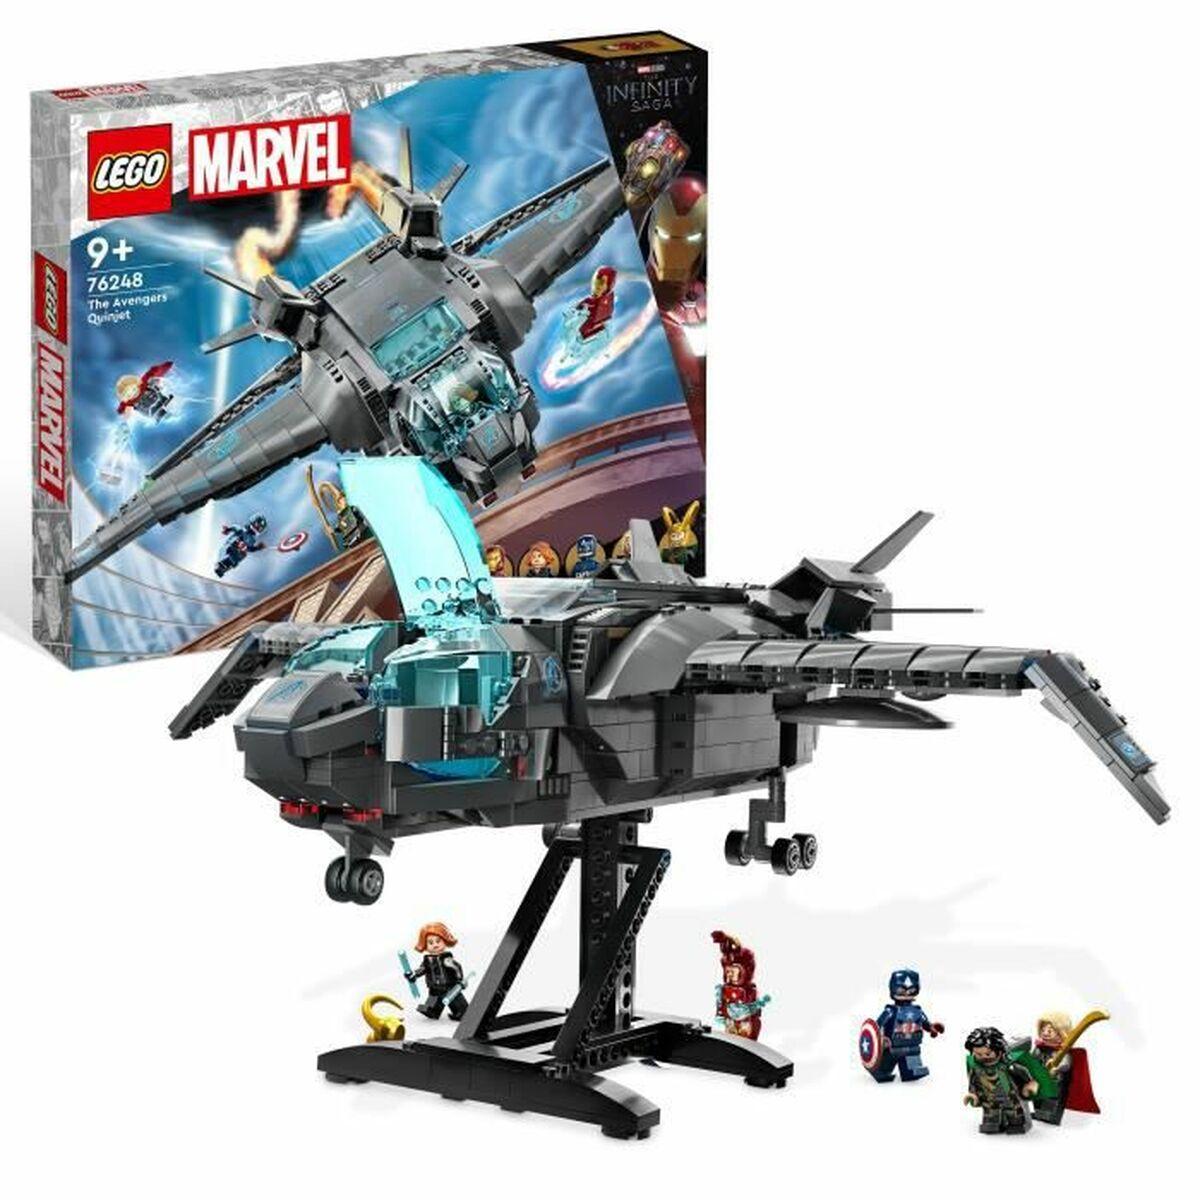 Se Playset Lego Marvel 76248 The Avengers Quinjet 795 Dele hos Boligcenter.dk